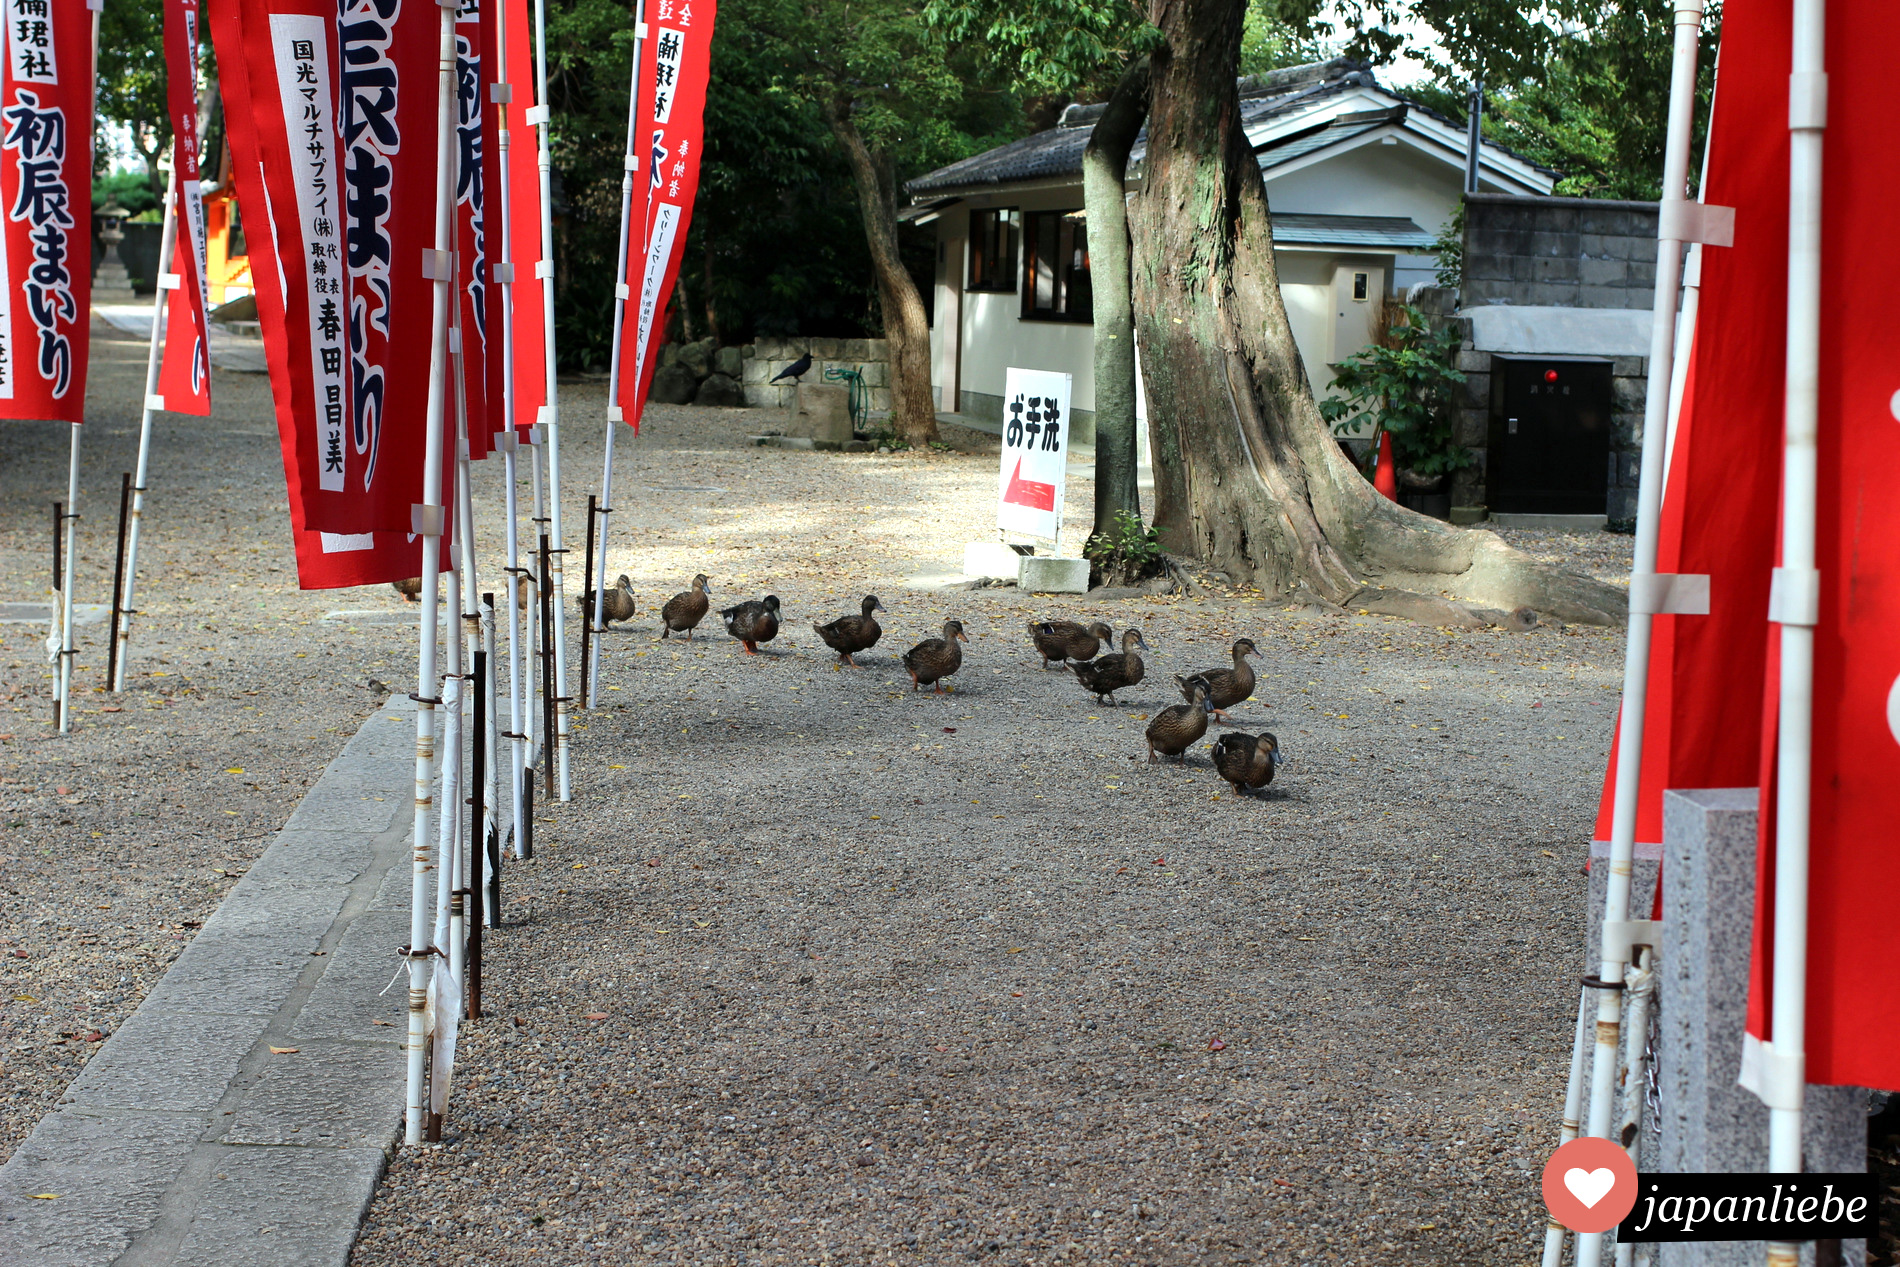 Eine Entenfamilie watschelt über den Weg am Sumiyoshi Taisha Schrein in Osaka.